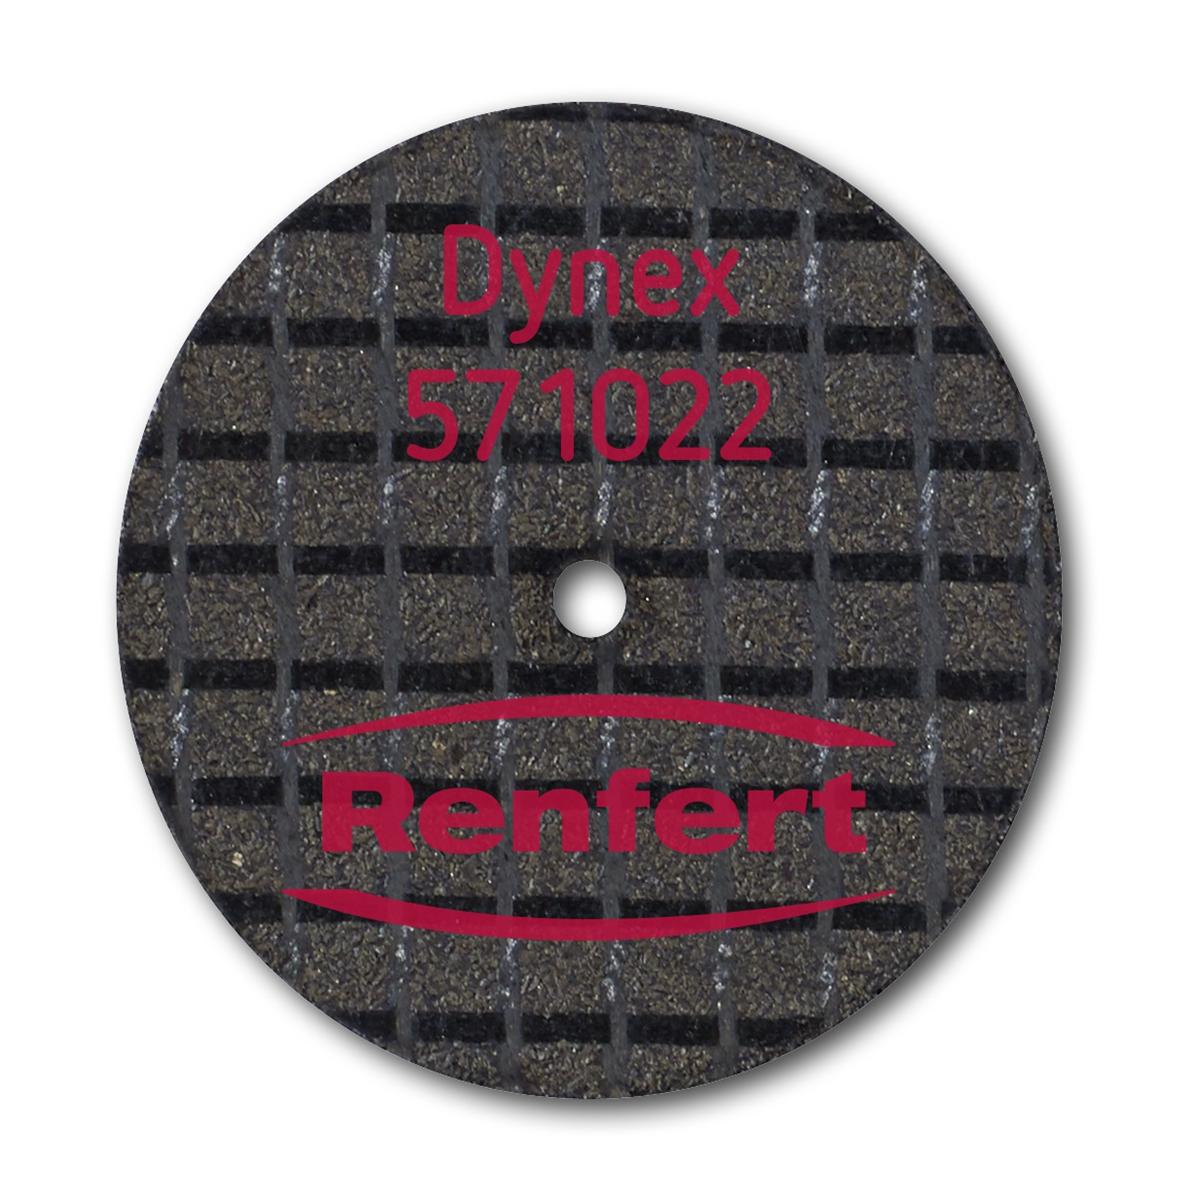 Dynex Trennscheiben für NEM und Modellguss - Ø 22 mm, Stärke 1,0 mm, Packung 25 Stück